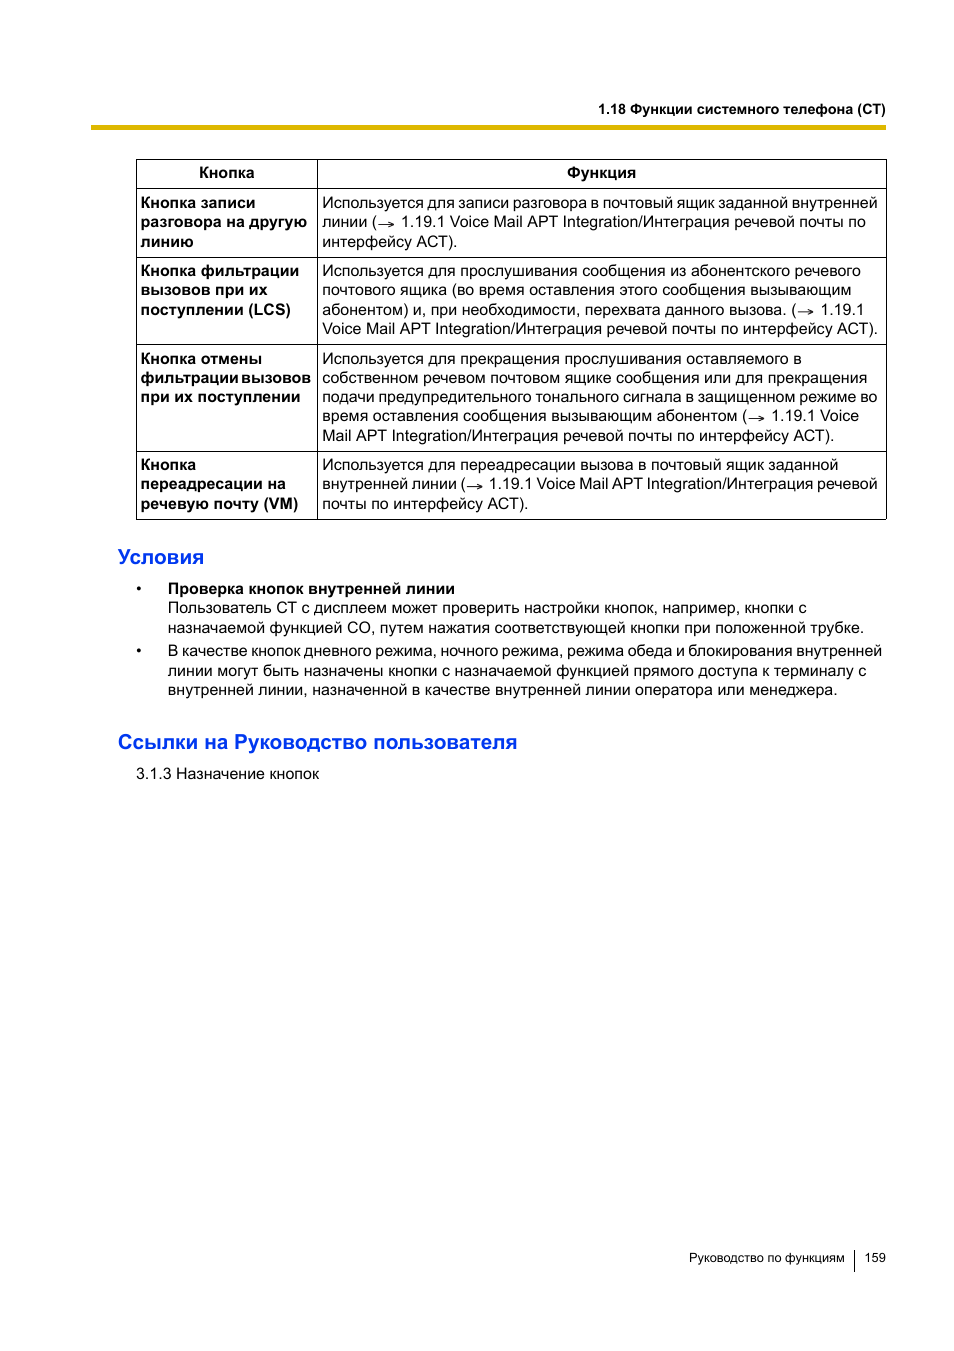 Условия, Ссылки на руководство пользователя | Инструкция по эксплуатации Panasonic KX-TEA308RU | Страница 159 / 318